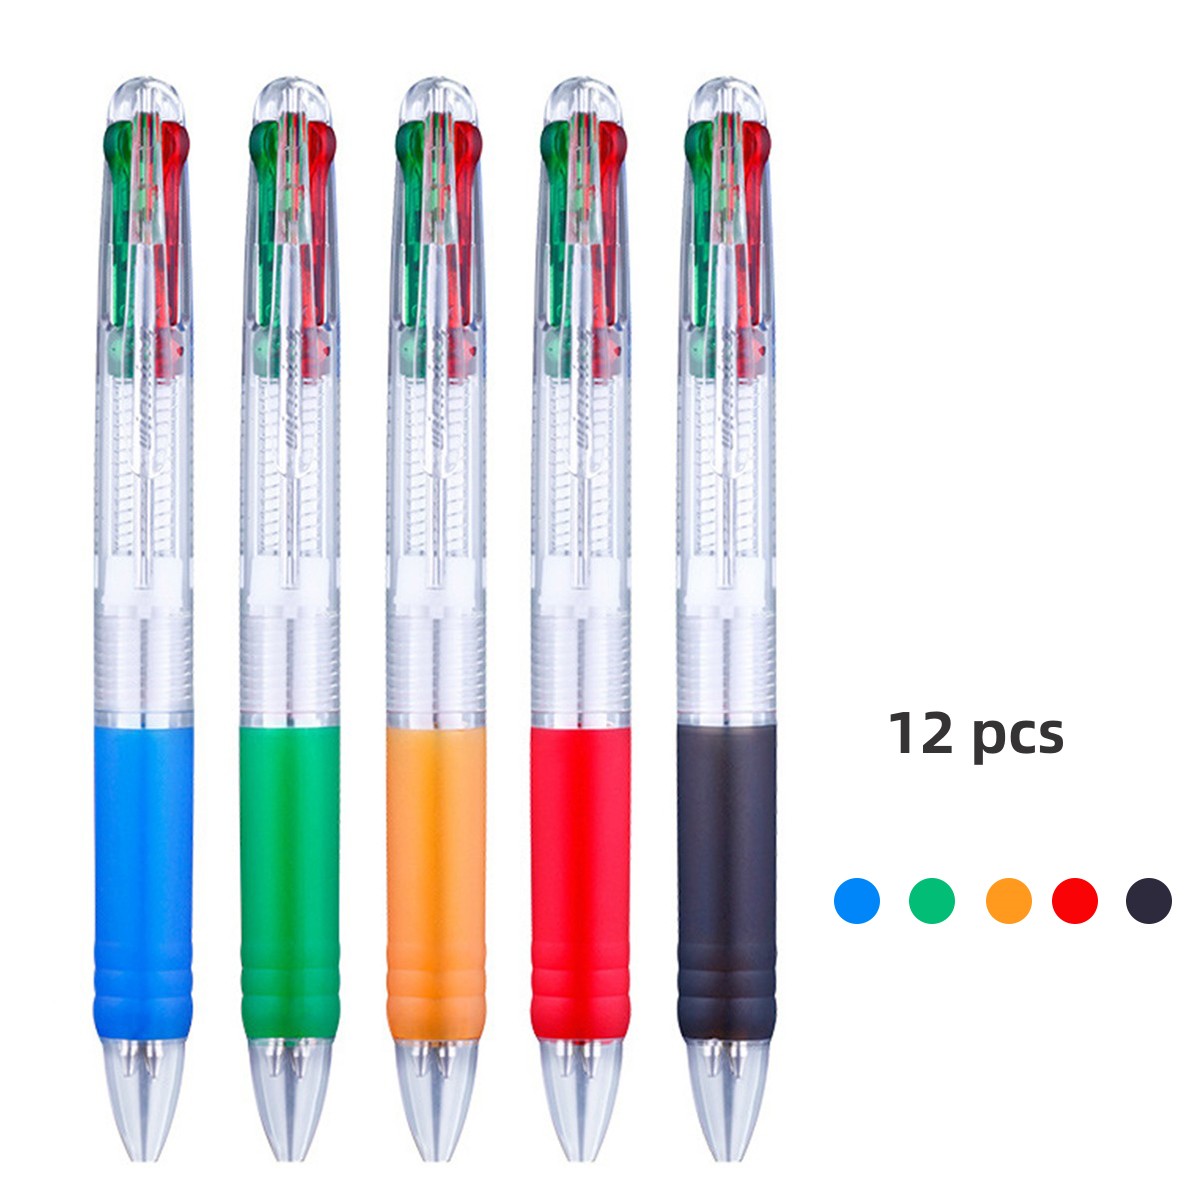  Bolígrafo multicolor de 0.020 in, 10 en 1 retráctil de color  para oficina, suministros escolares, estudiantes, niños, regalo, 6 unidades  : Productos de Oficina